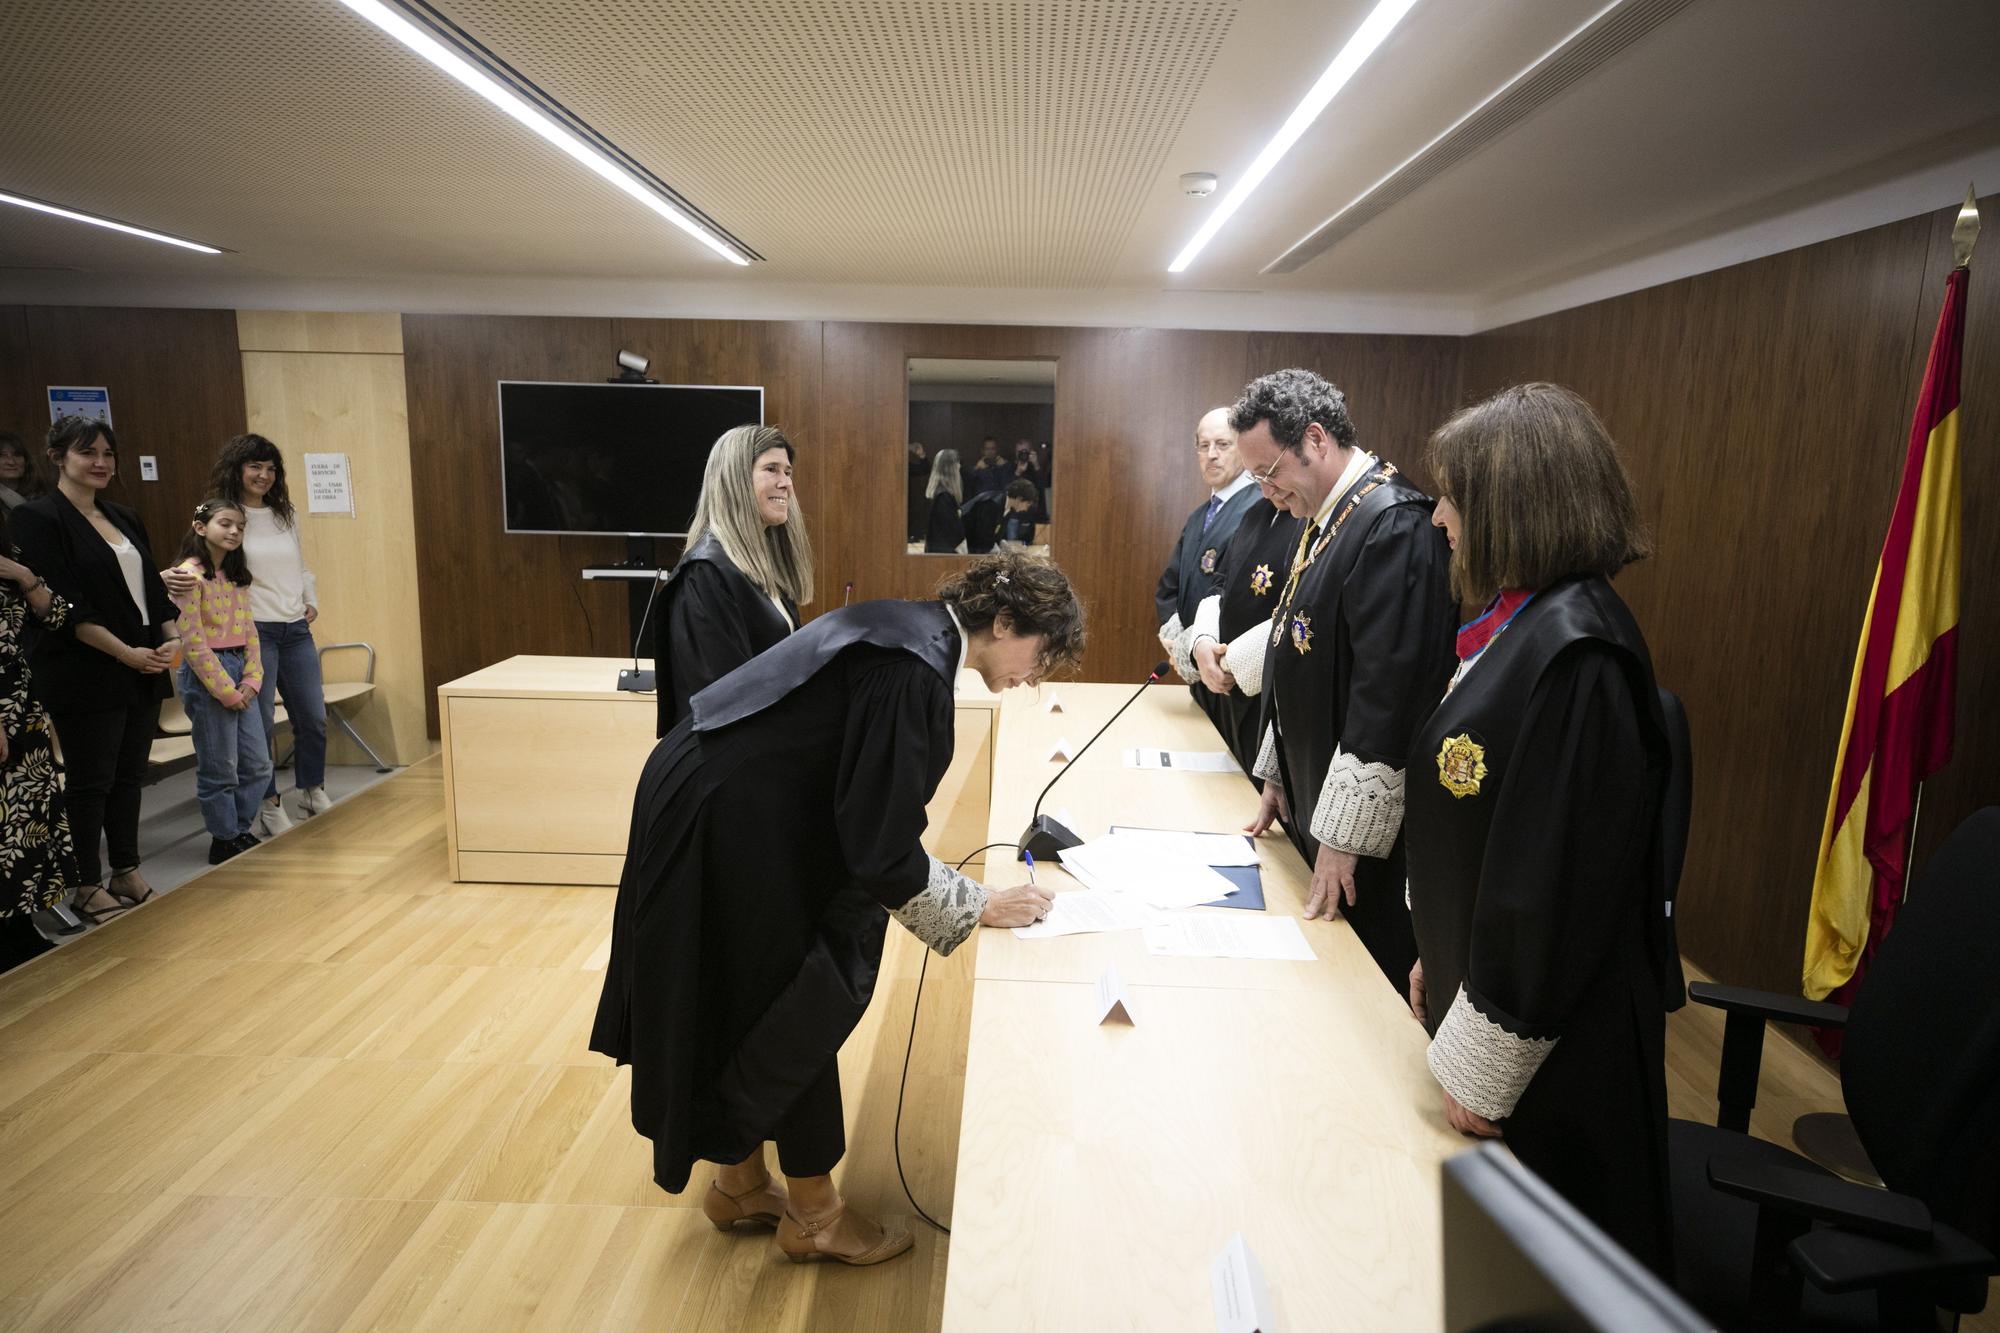 Nombramiento de Bárbara Moreno Orduño como Fiscal Jefe del área de Ibiza